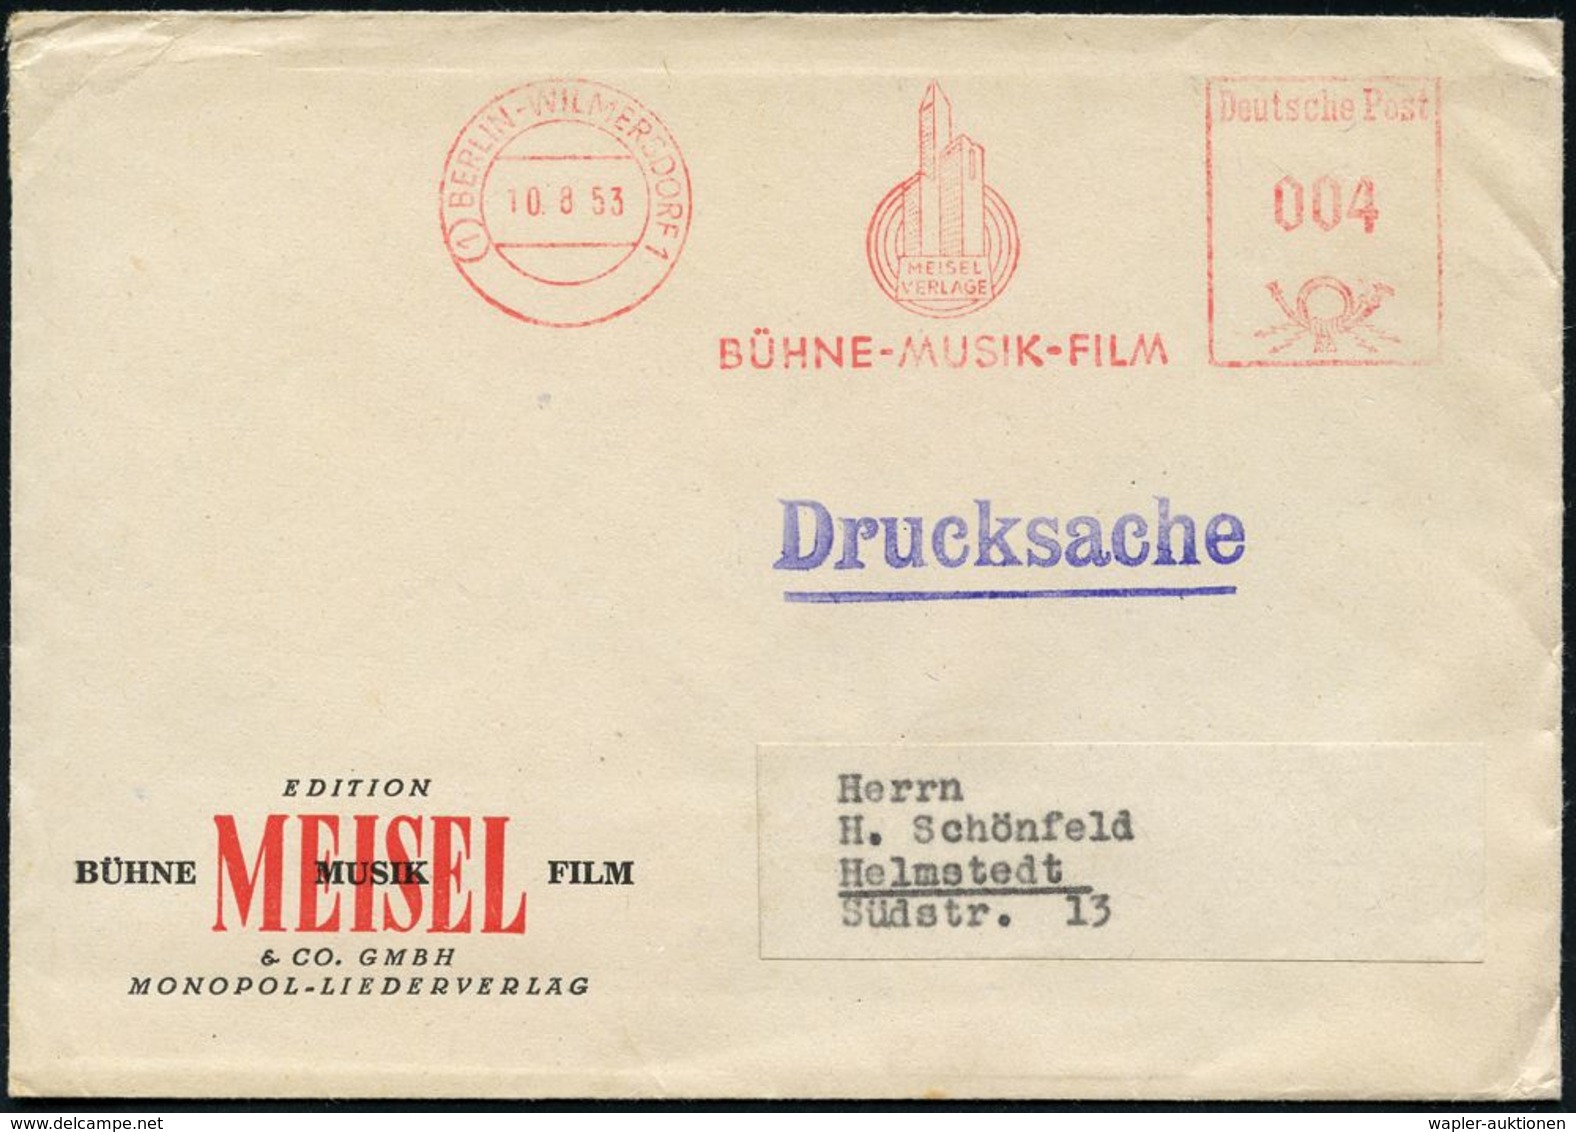 MUSIK-VERLAGE : (1) BERLIN-WILMERSDORF 1/ MEISEL-VERLAG/ BÜHNE-MUSIK-FILM 1953 (10.8.) AFS (Logo: Hochhäuser, Schallwell - Music